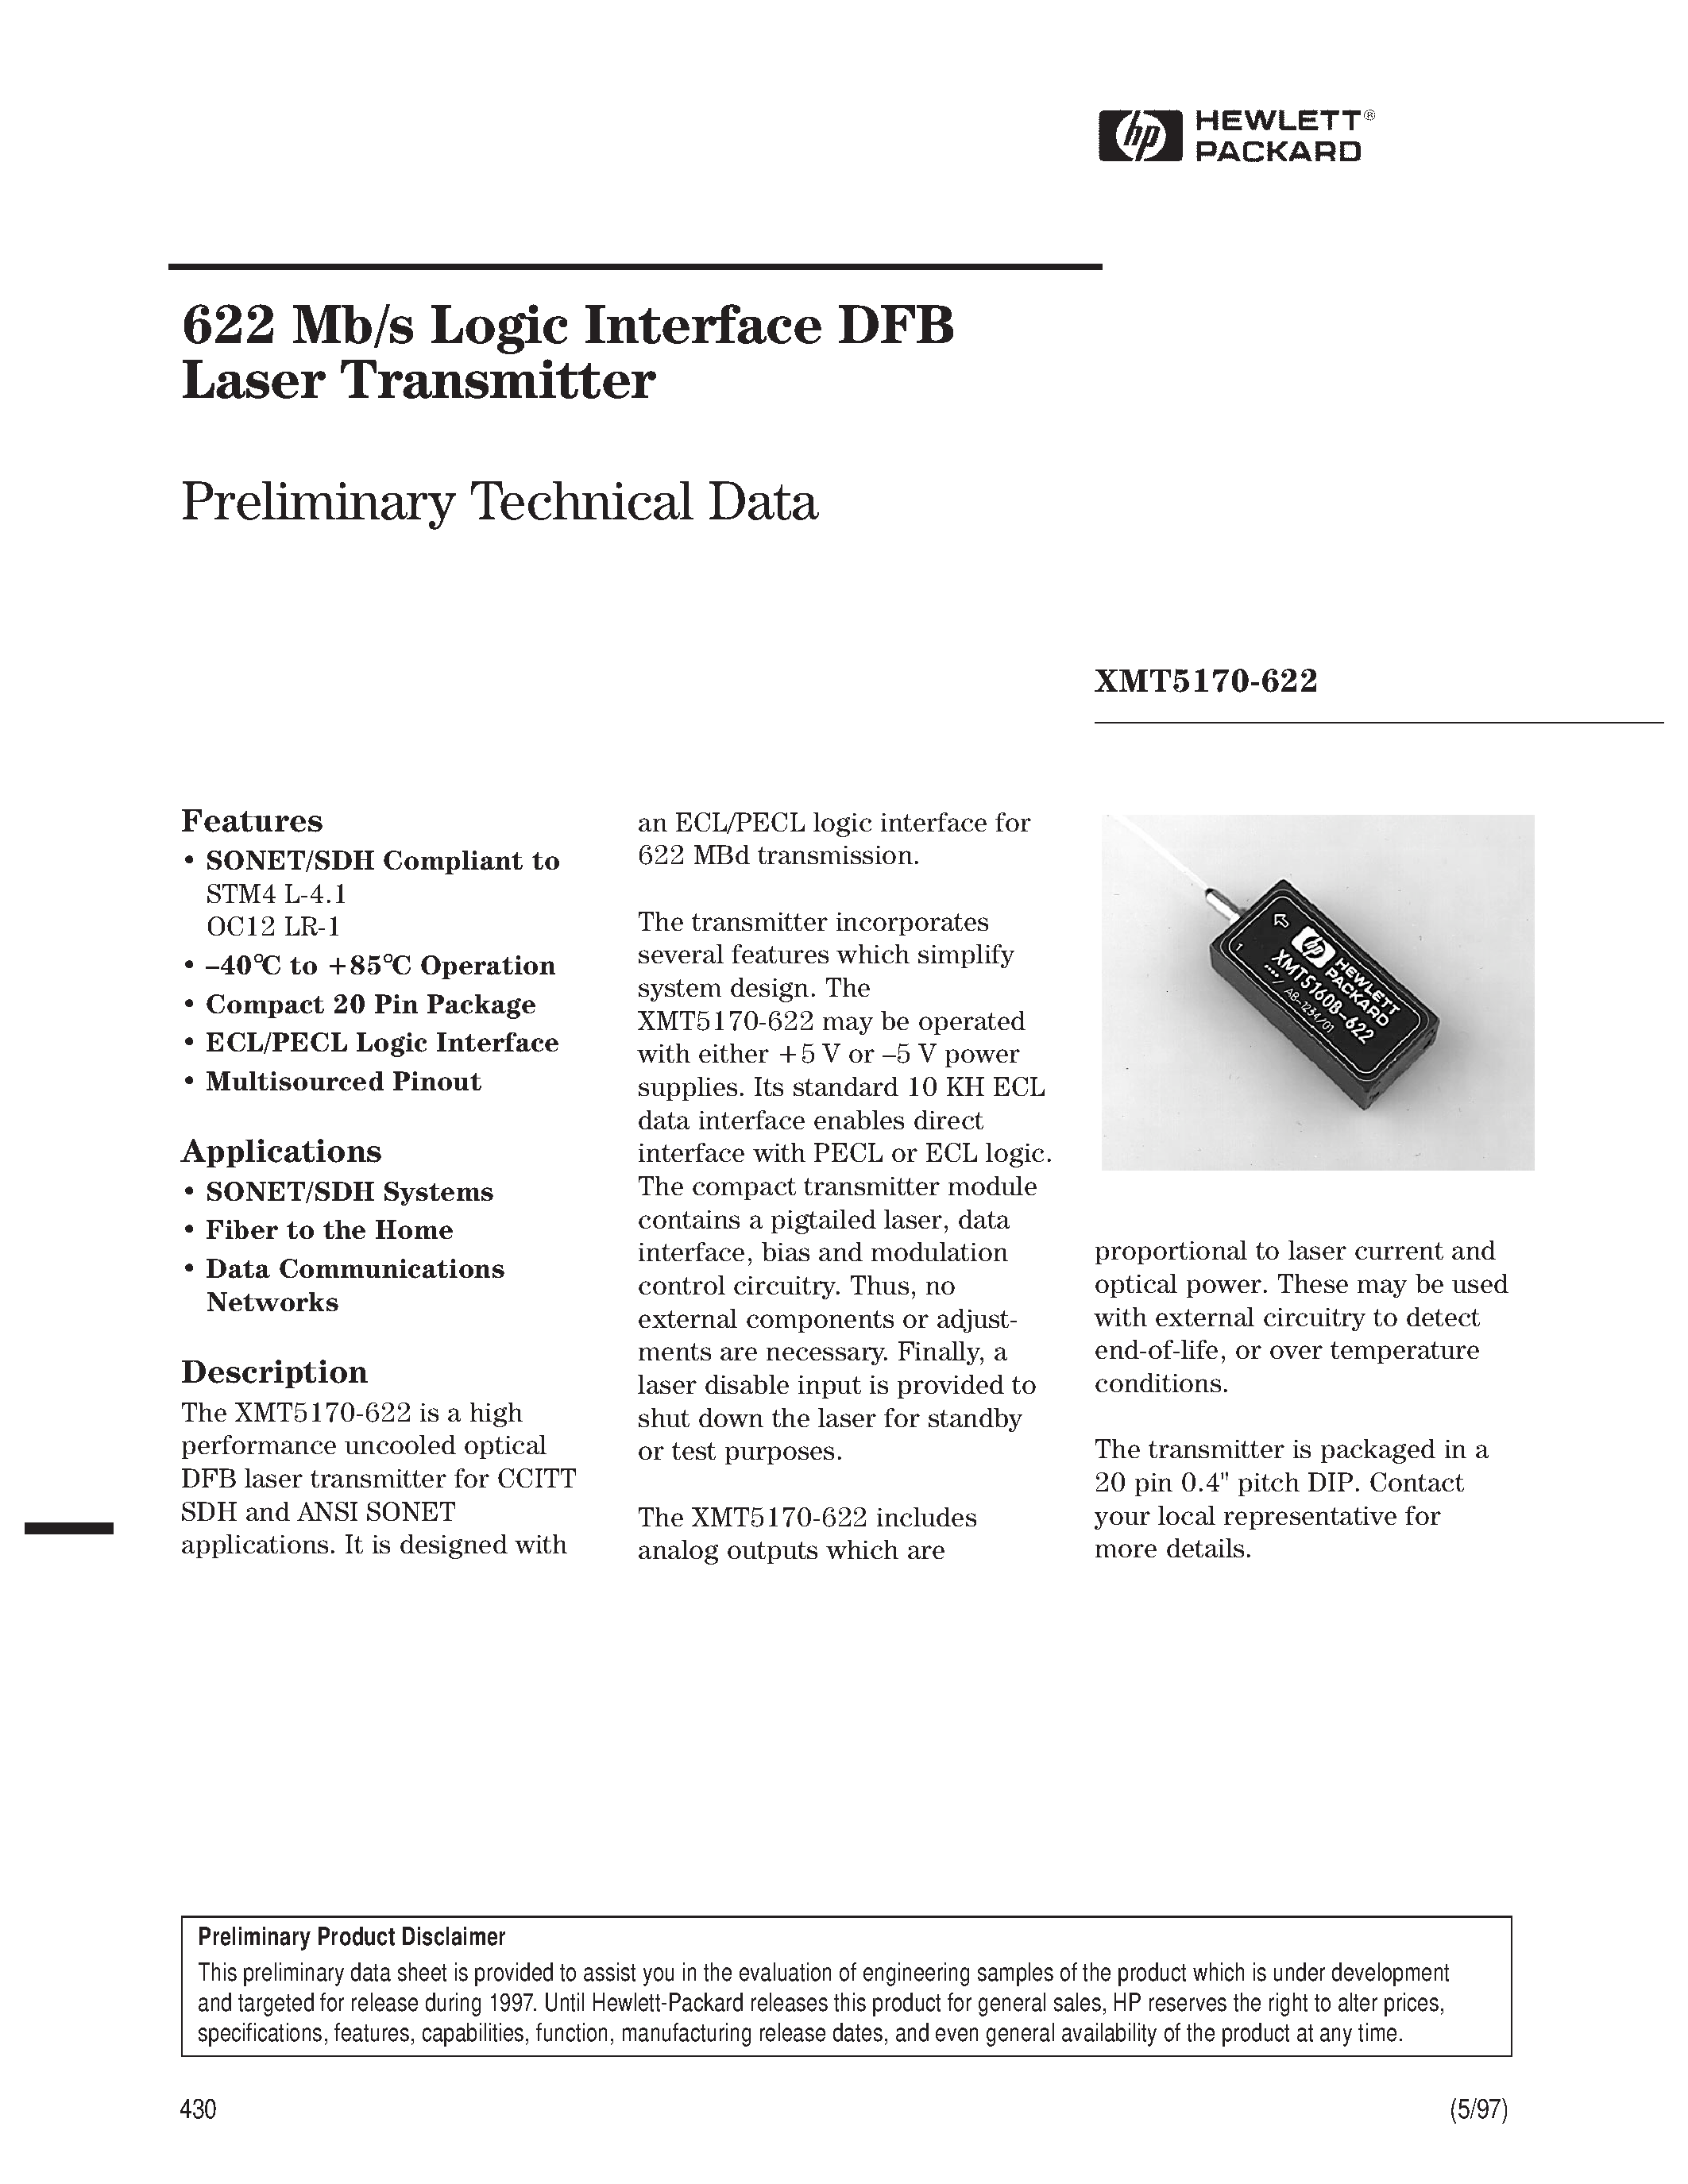 Datasheet XMT5170B-622-AS - 622 Mb/s Logic Interface DFB Laser Transmitter page 1